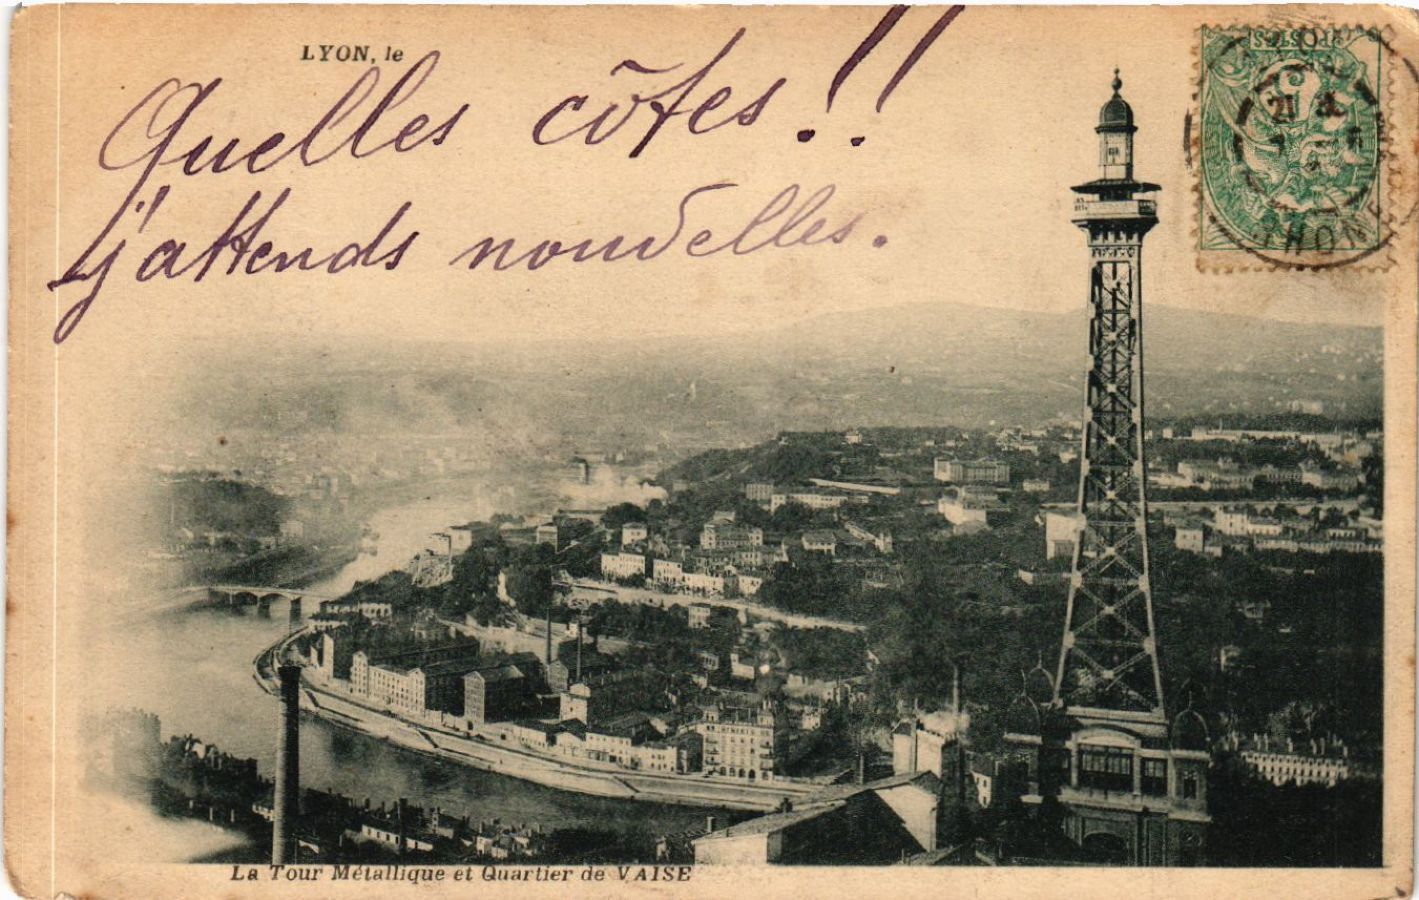 CPA LYON - The Metallic Tower and Quartier de VAISE (426688)